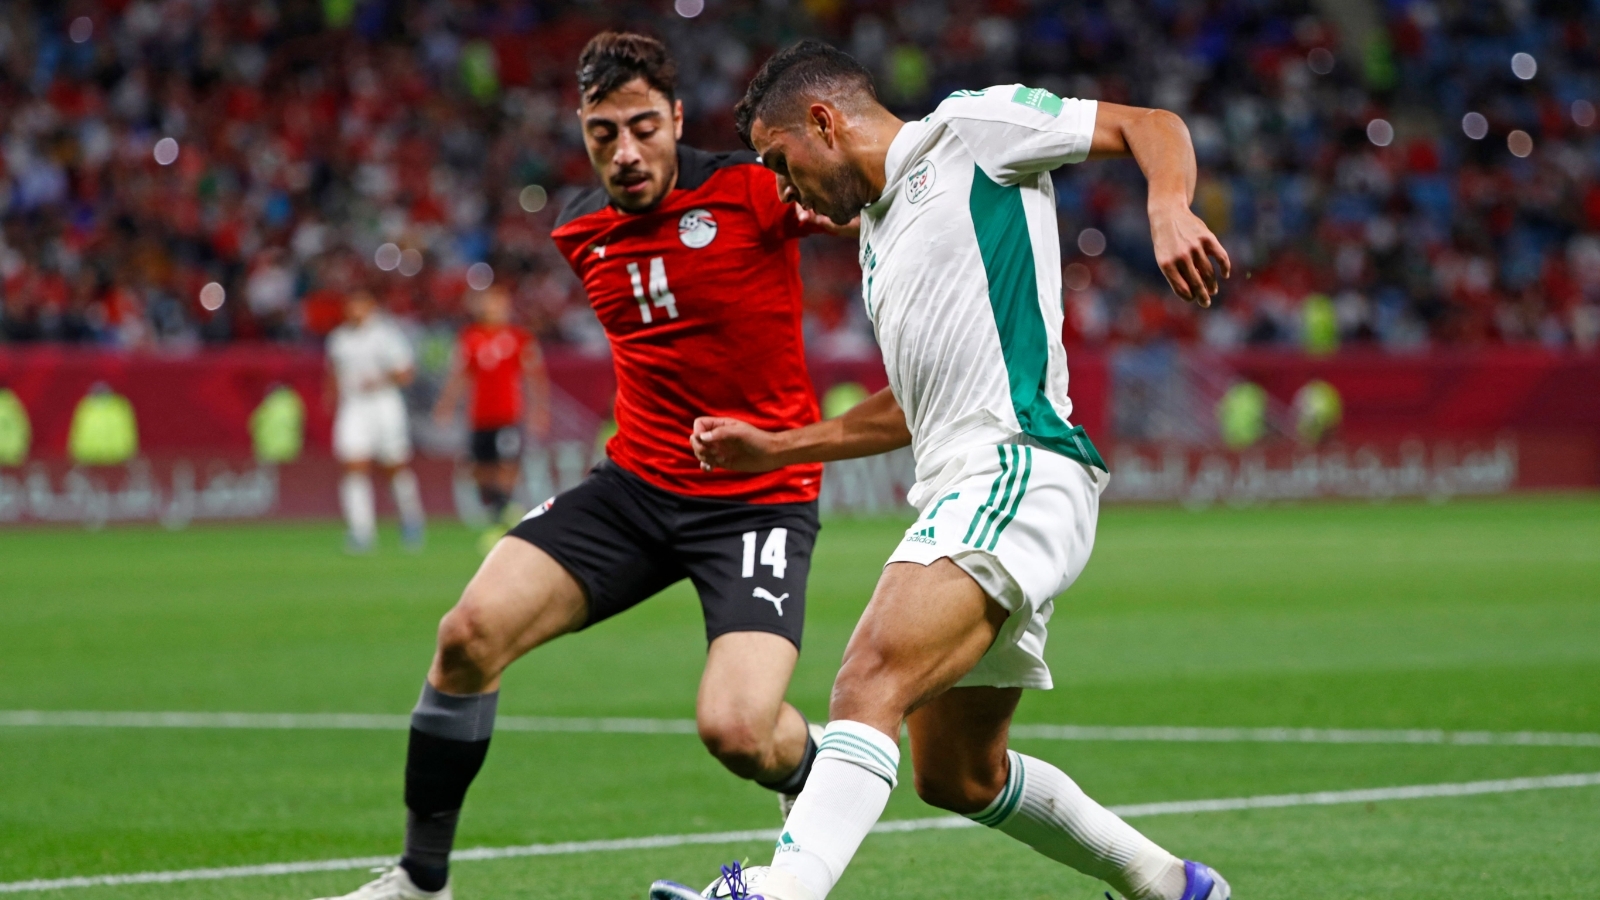 موعد مباراة مصر وقطر فى كاس العرب 2021 والقنوات الناقلة للمباراة والتشكيل المتوقع